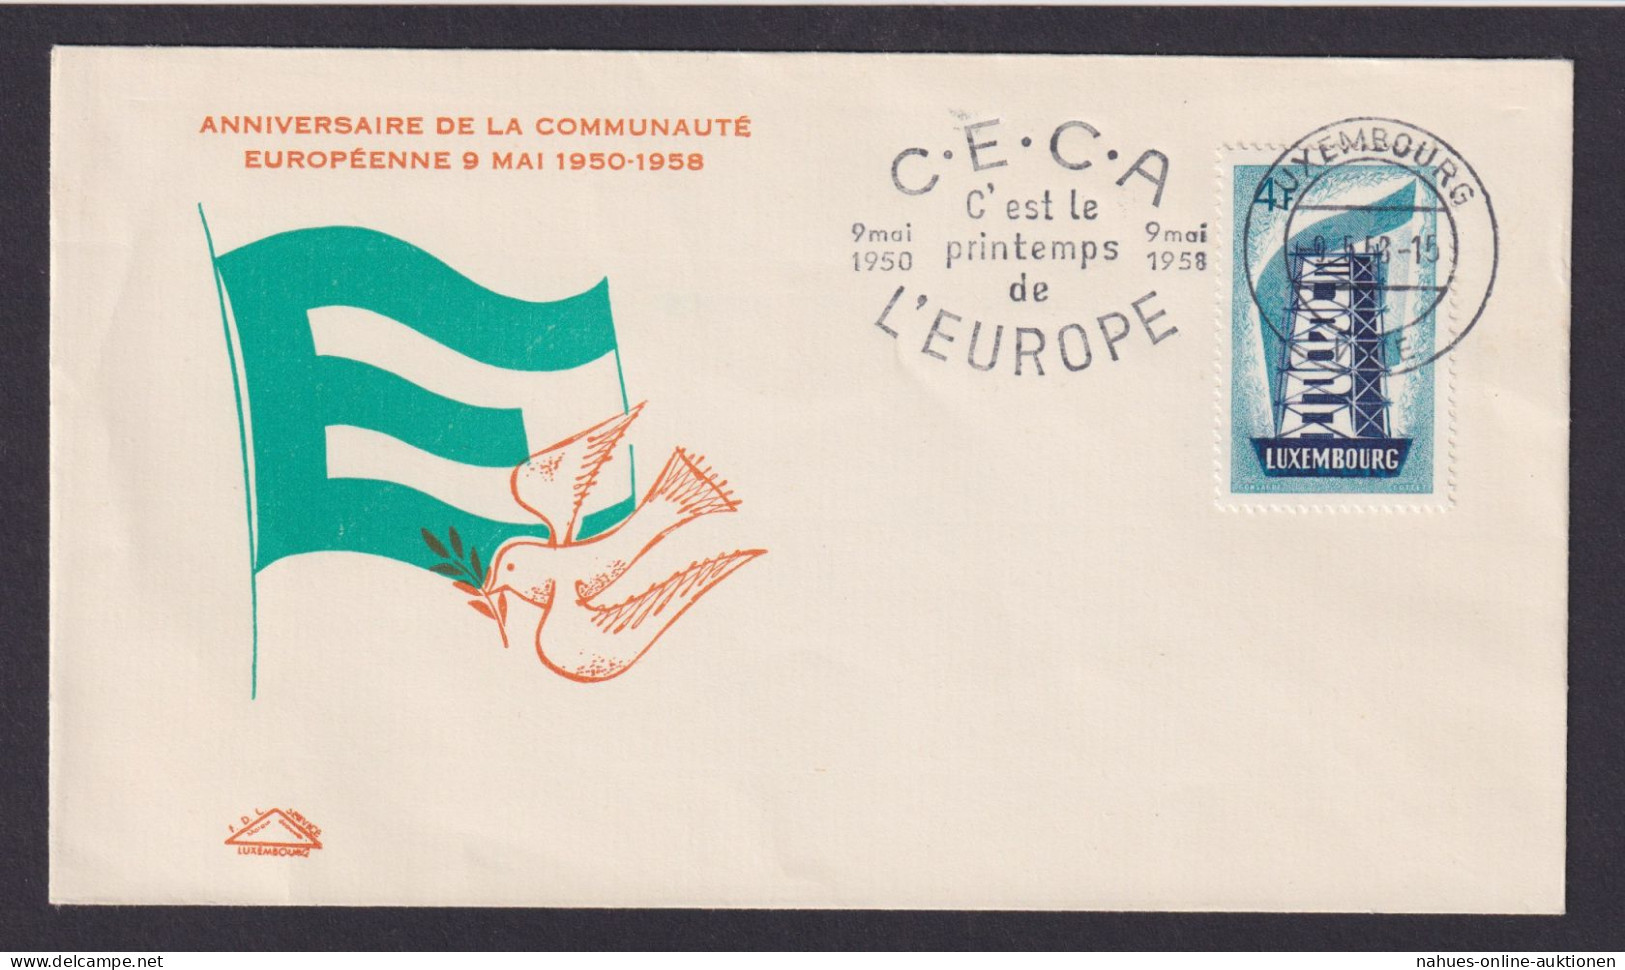 Luxemburg Brief EF 557 Europa Cept Schön Gestalteter Umschlag Mit Friedestaube - Covers & Documents